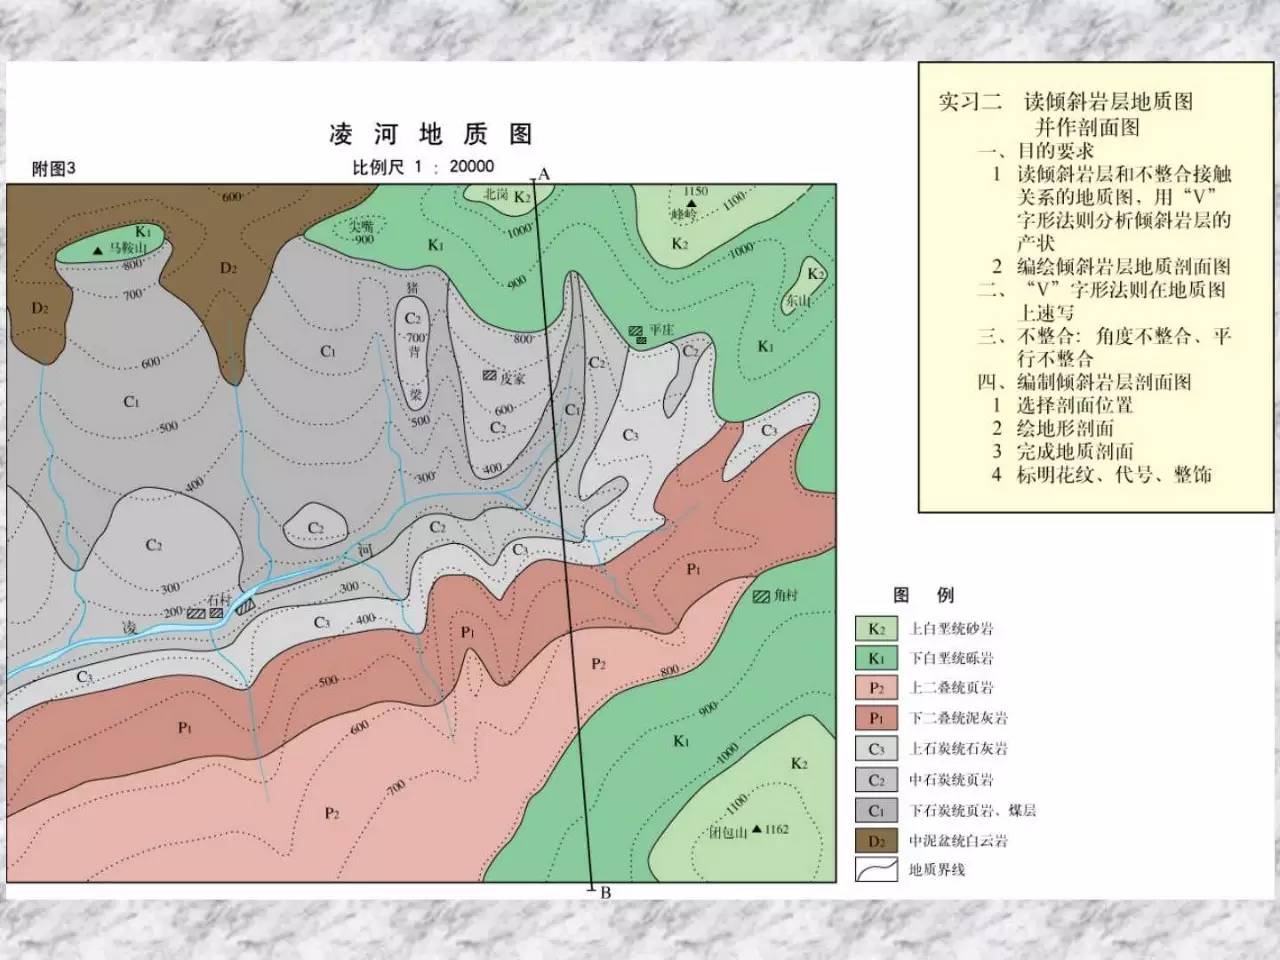 明山寨地质图读图报告图片